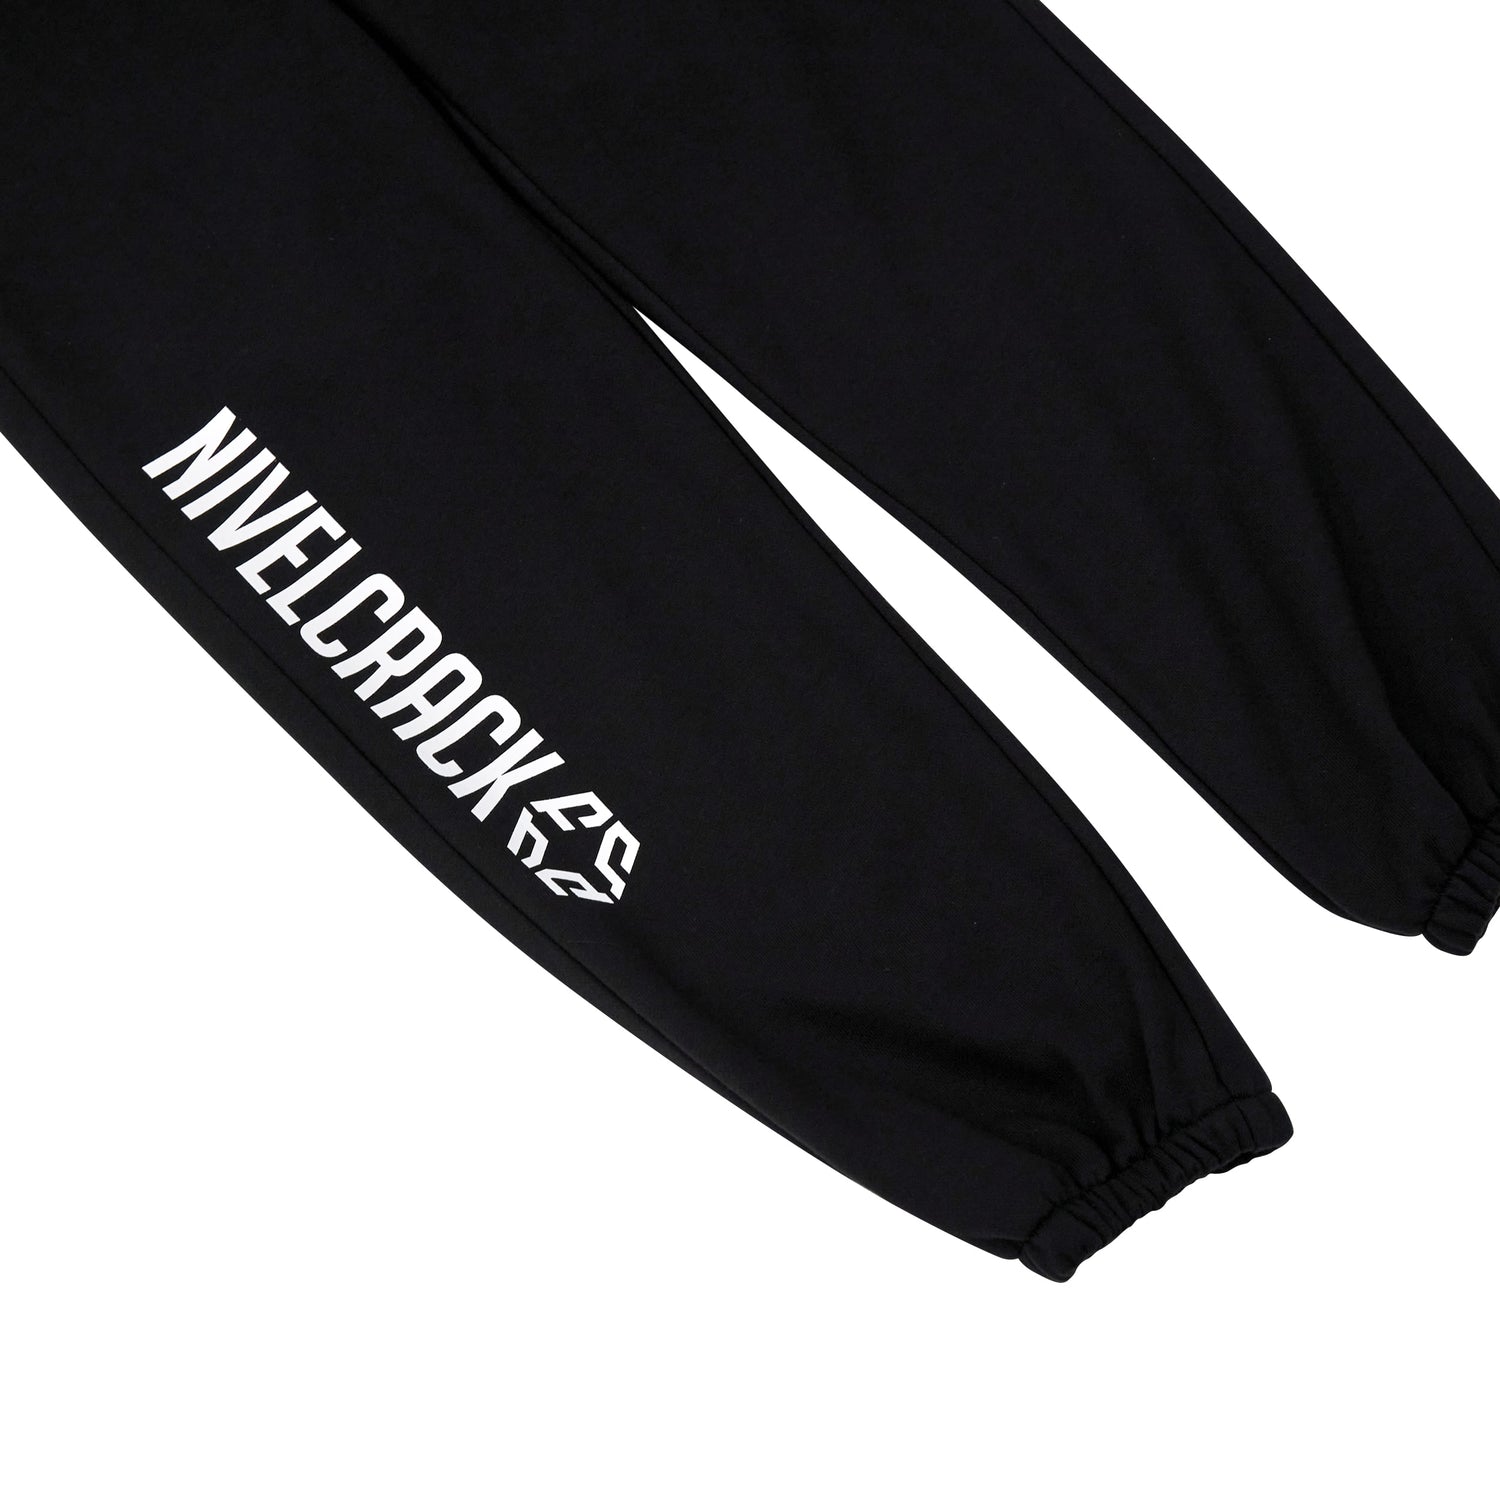 Nivelcrack OG Squad Sweatpants - Black